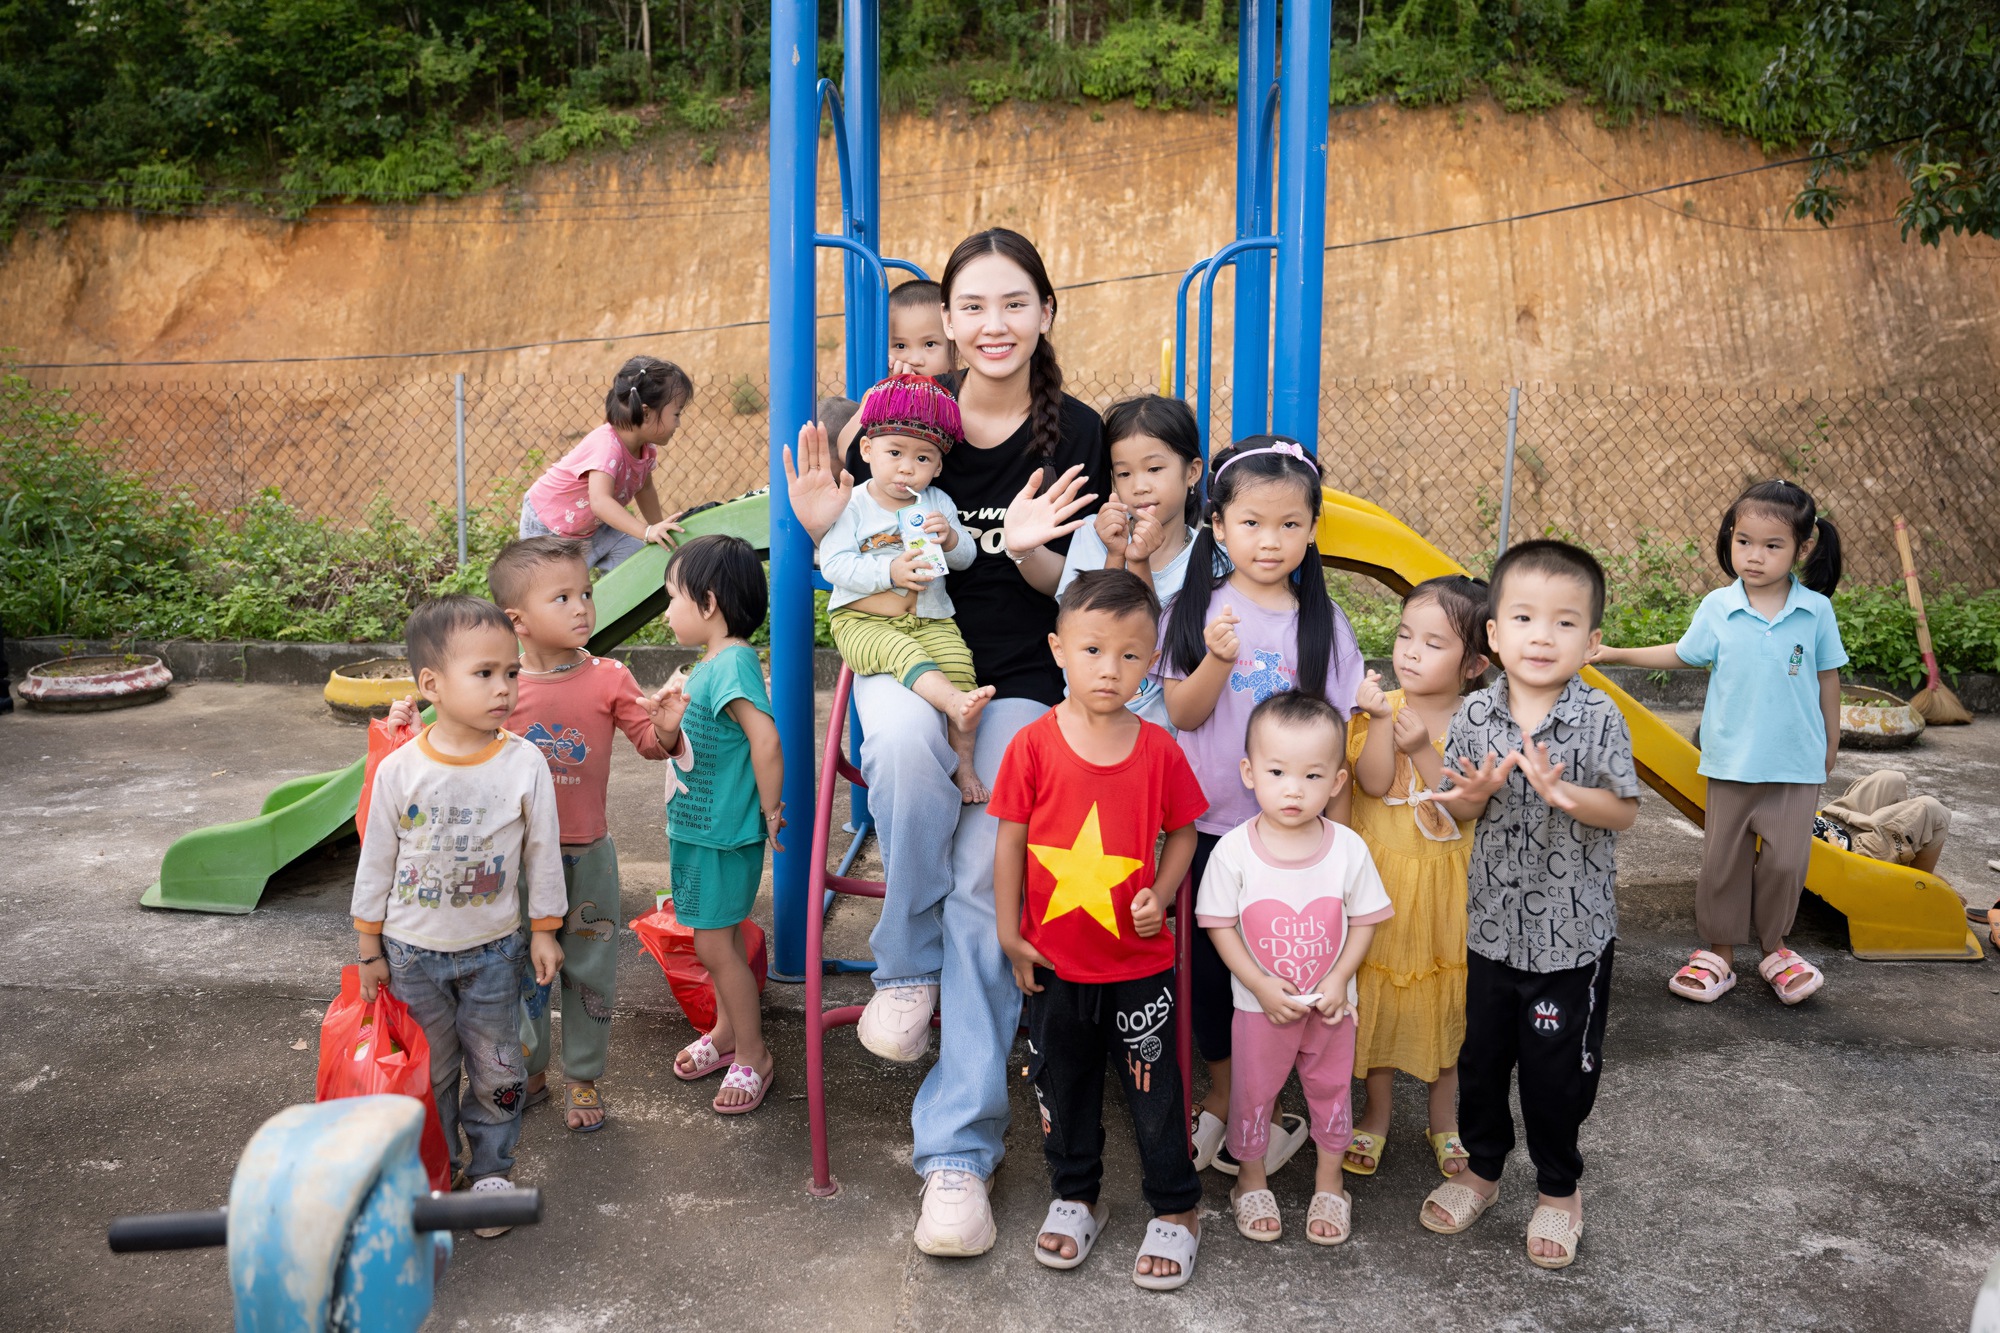 Hoa hậu Mai Phương đến thăm và tặng quà cho học sinh nghèo Bắc Kạn nhân dịp khai giảng - Ảnh 14.